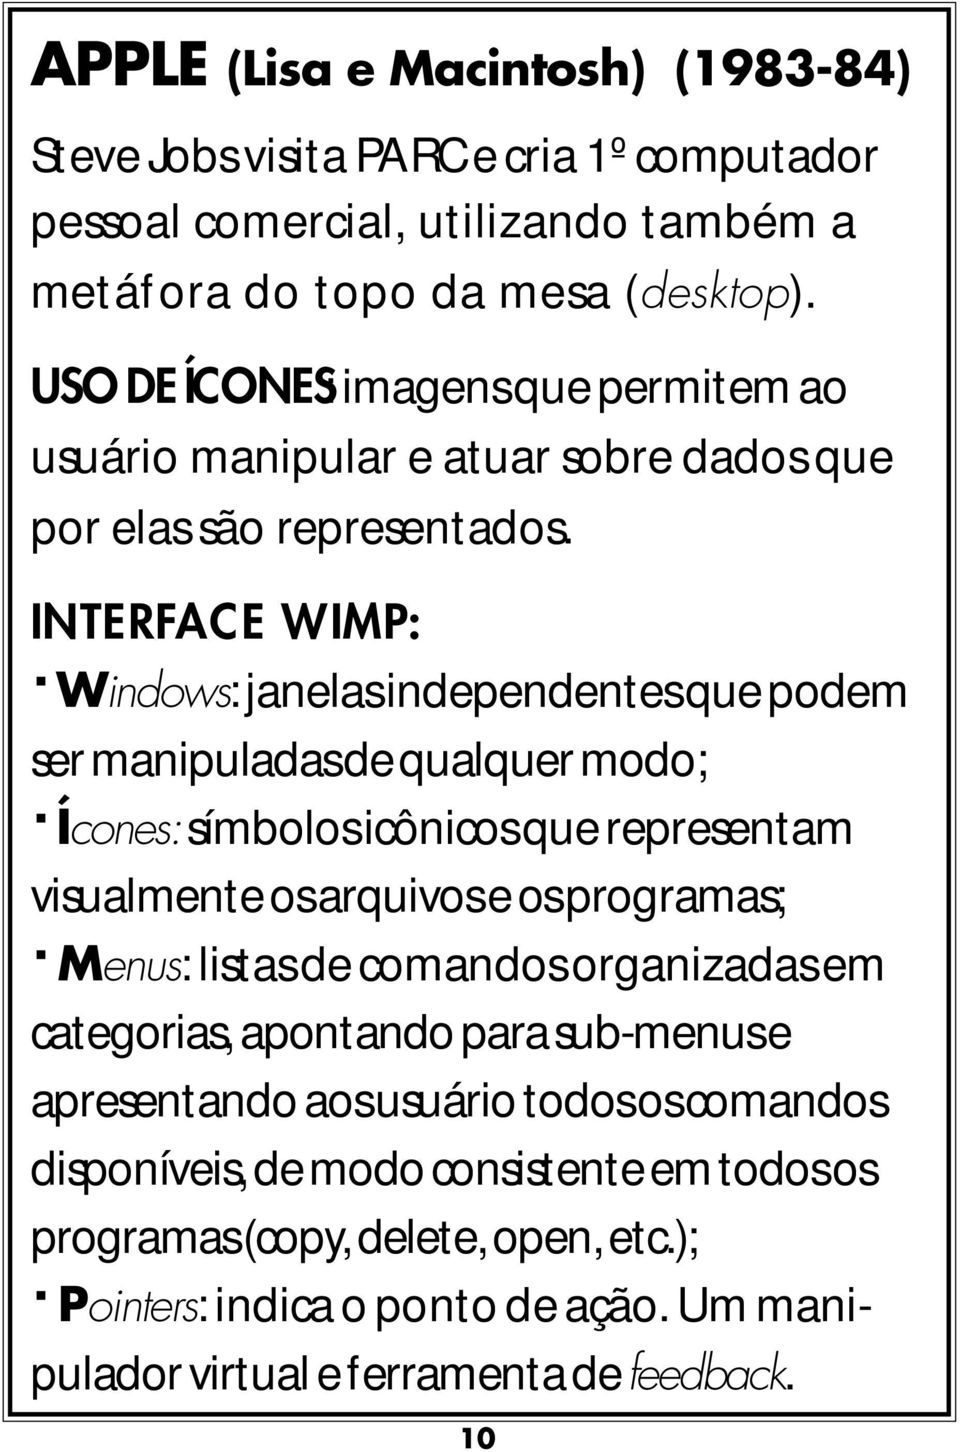 INTERFACE WIMP: Windows: janelas independentes que podem ser manipuladas de qualquer modo; Ícones: símbolos icônicos que representam visualmente os arquivos e os programas; Menus: